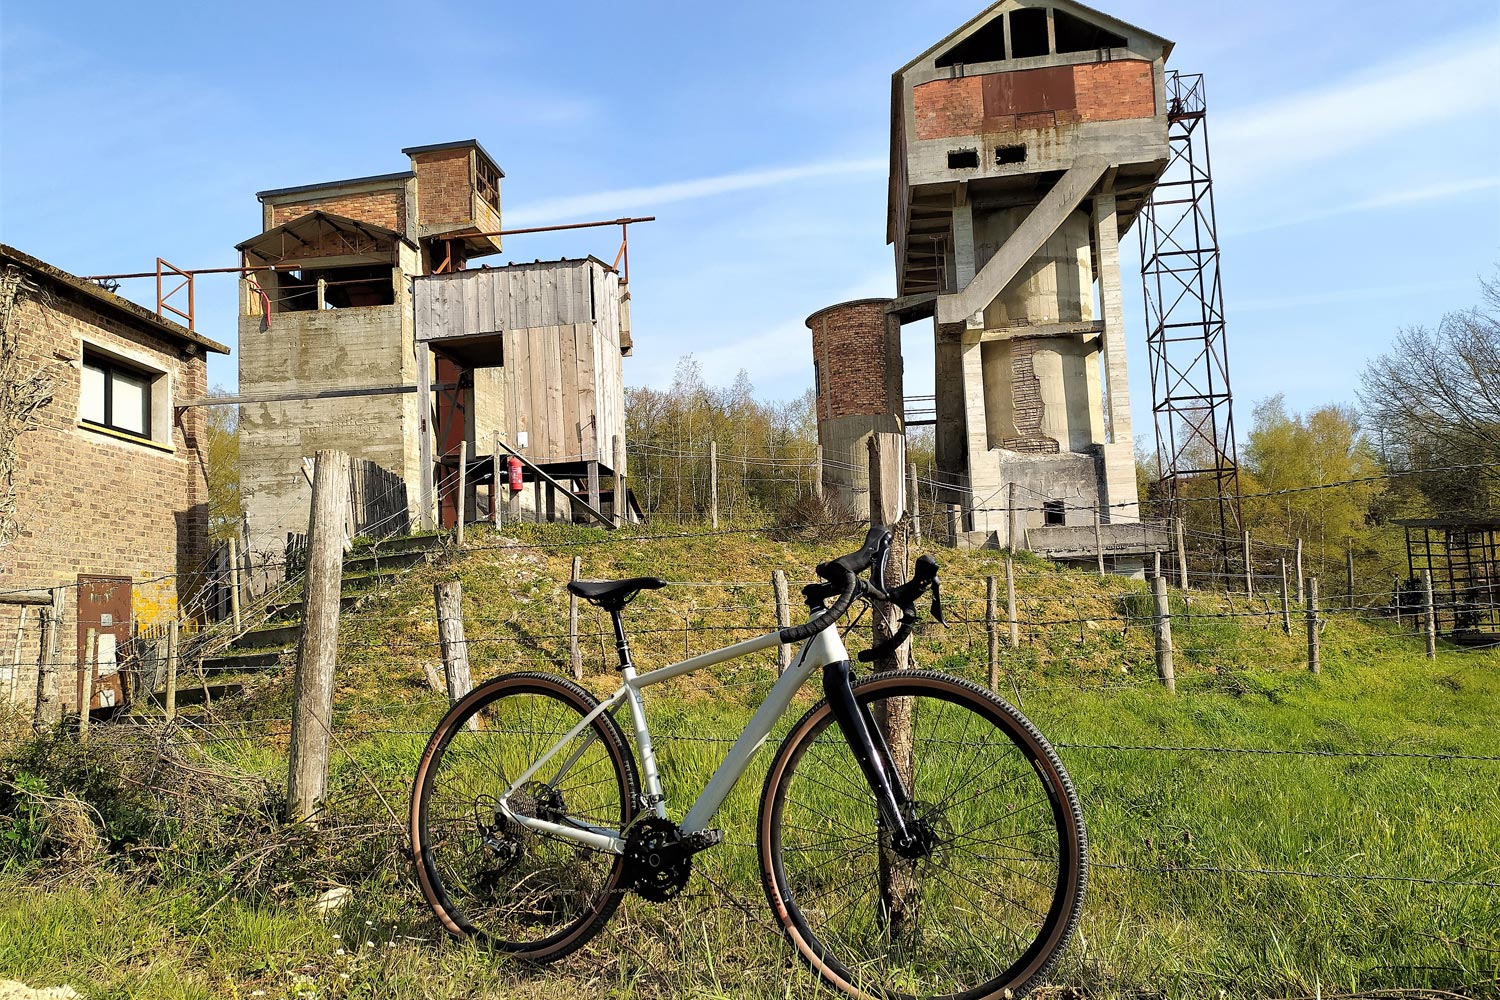 Test du vélo de gravel Lapierre Crosshill 5.0